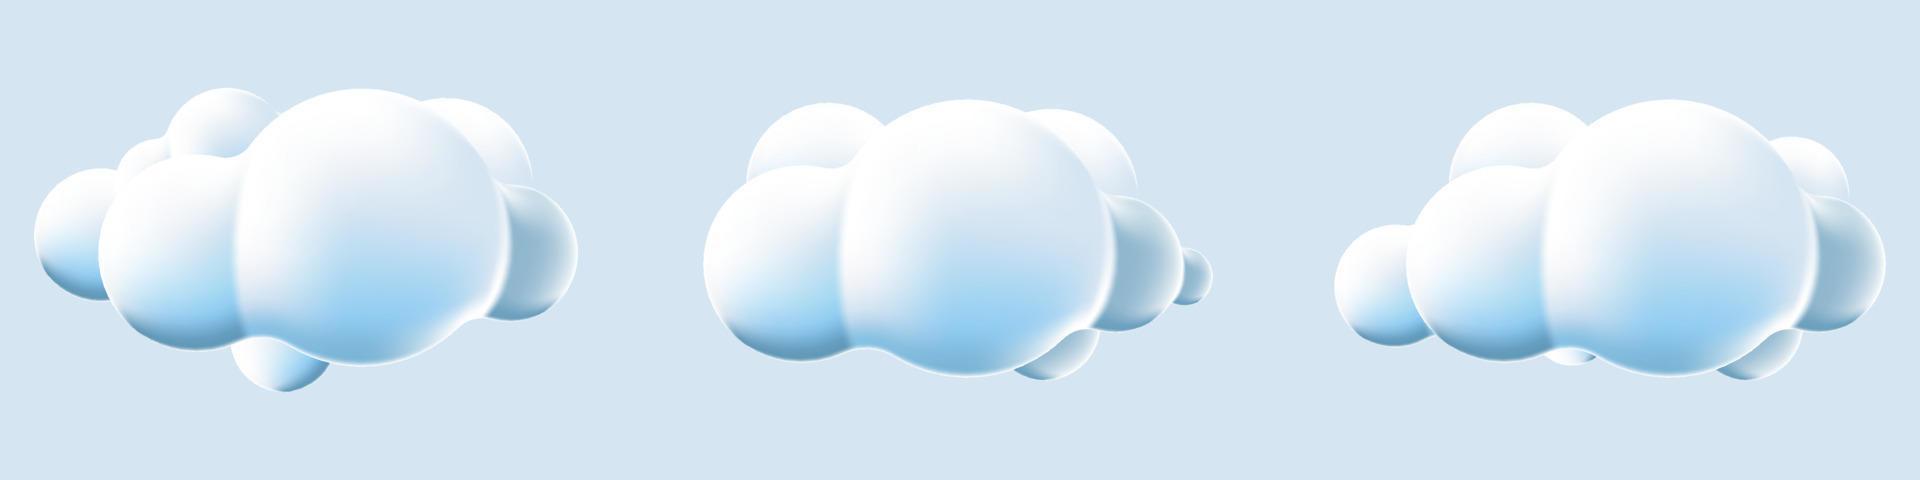 Les nuages 3d définissent un arrière-plan isolé. rendre les icônes de nuages moelleux de dessin animé rond doux. formes géométriques 3d. diverses formes de nuages doux de dessin animé. illustration vectorielle vecteur